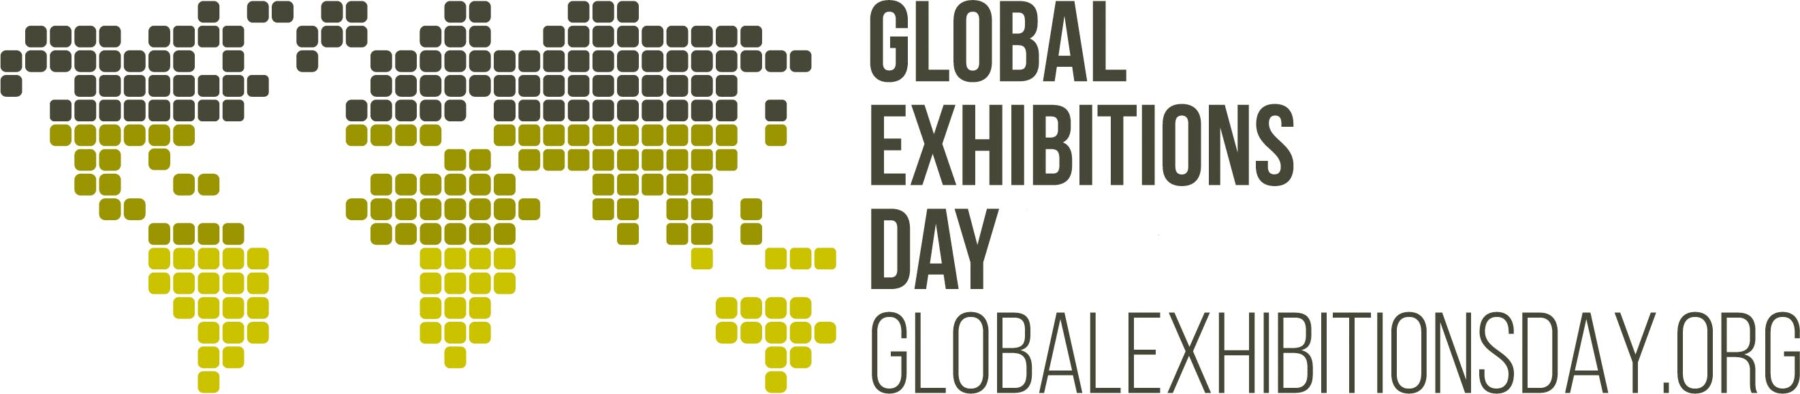 Global Exhibition Day - UFI 